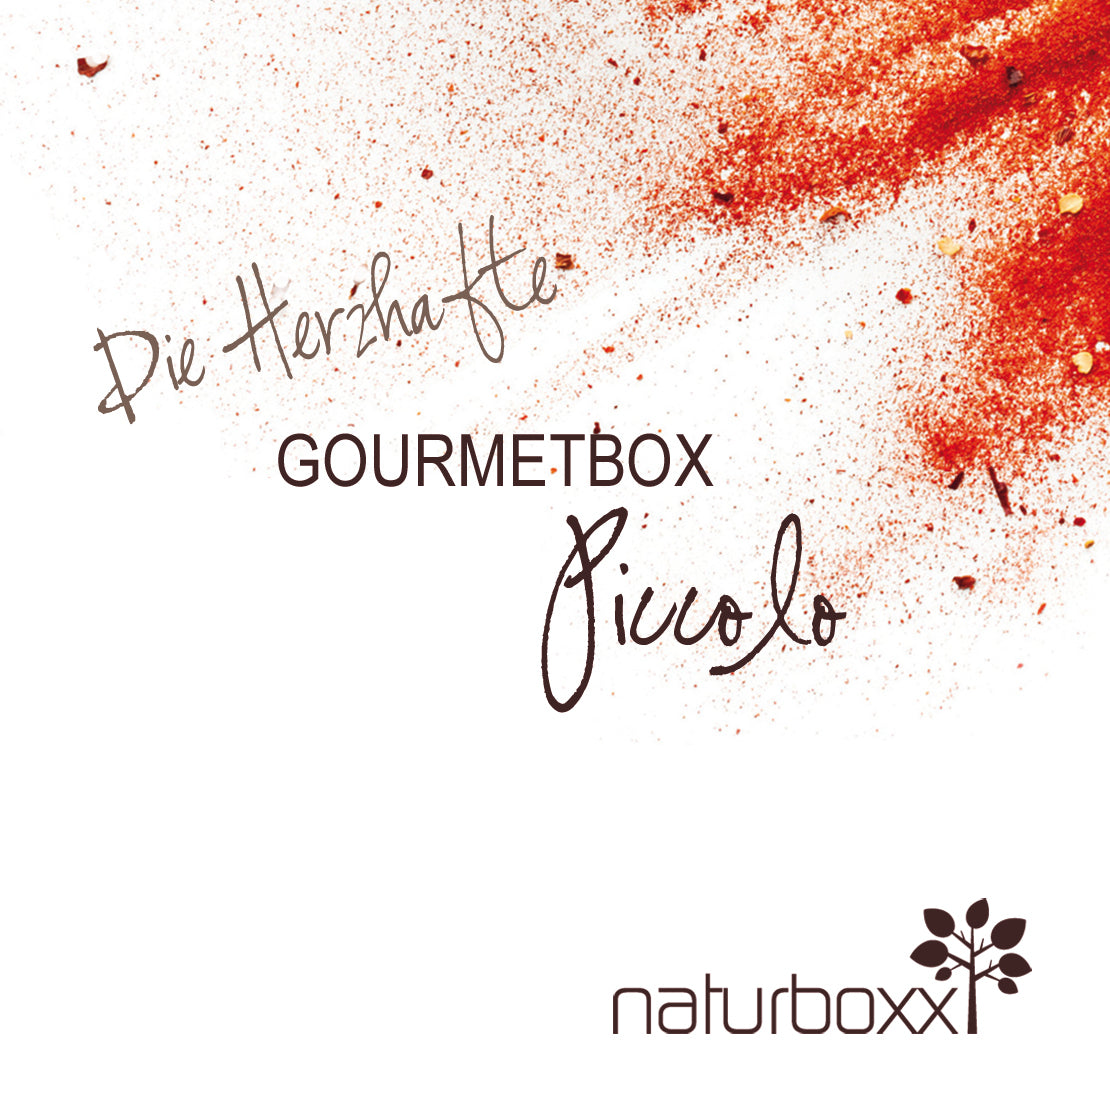 Gourmetbox PICCOLO - Die Herzhafte